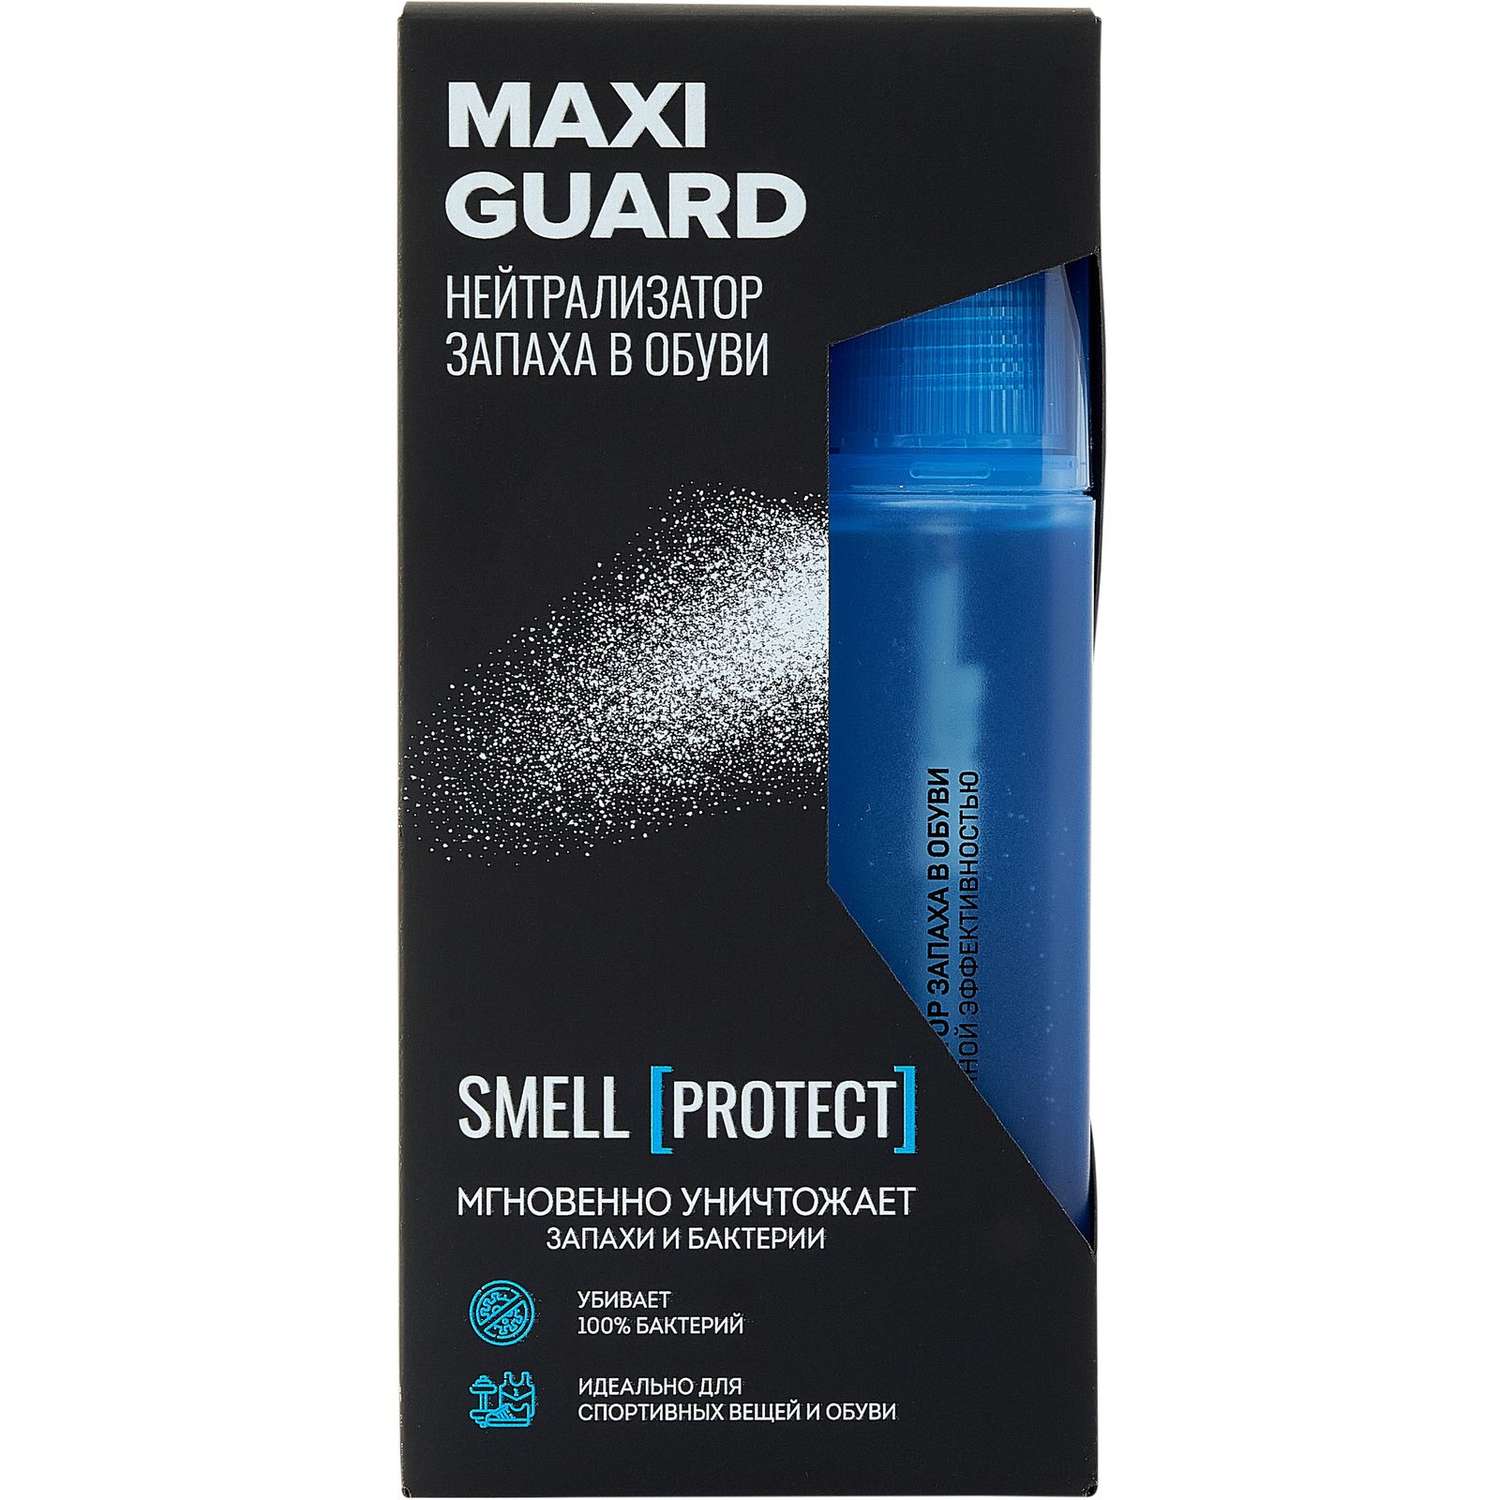 Нейтрализатор запаха в обуви Maxiguard 24337808 - фото 1